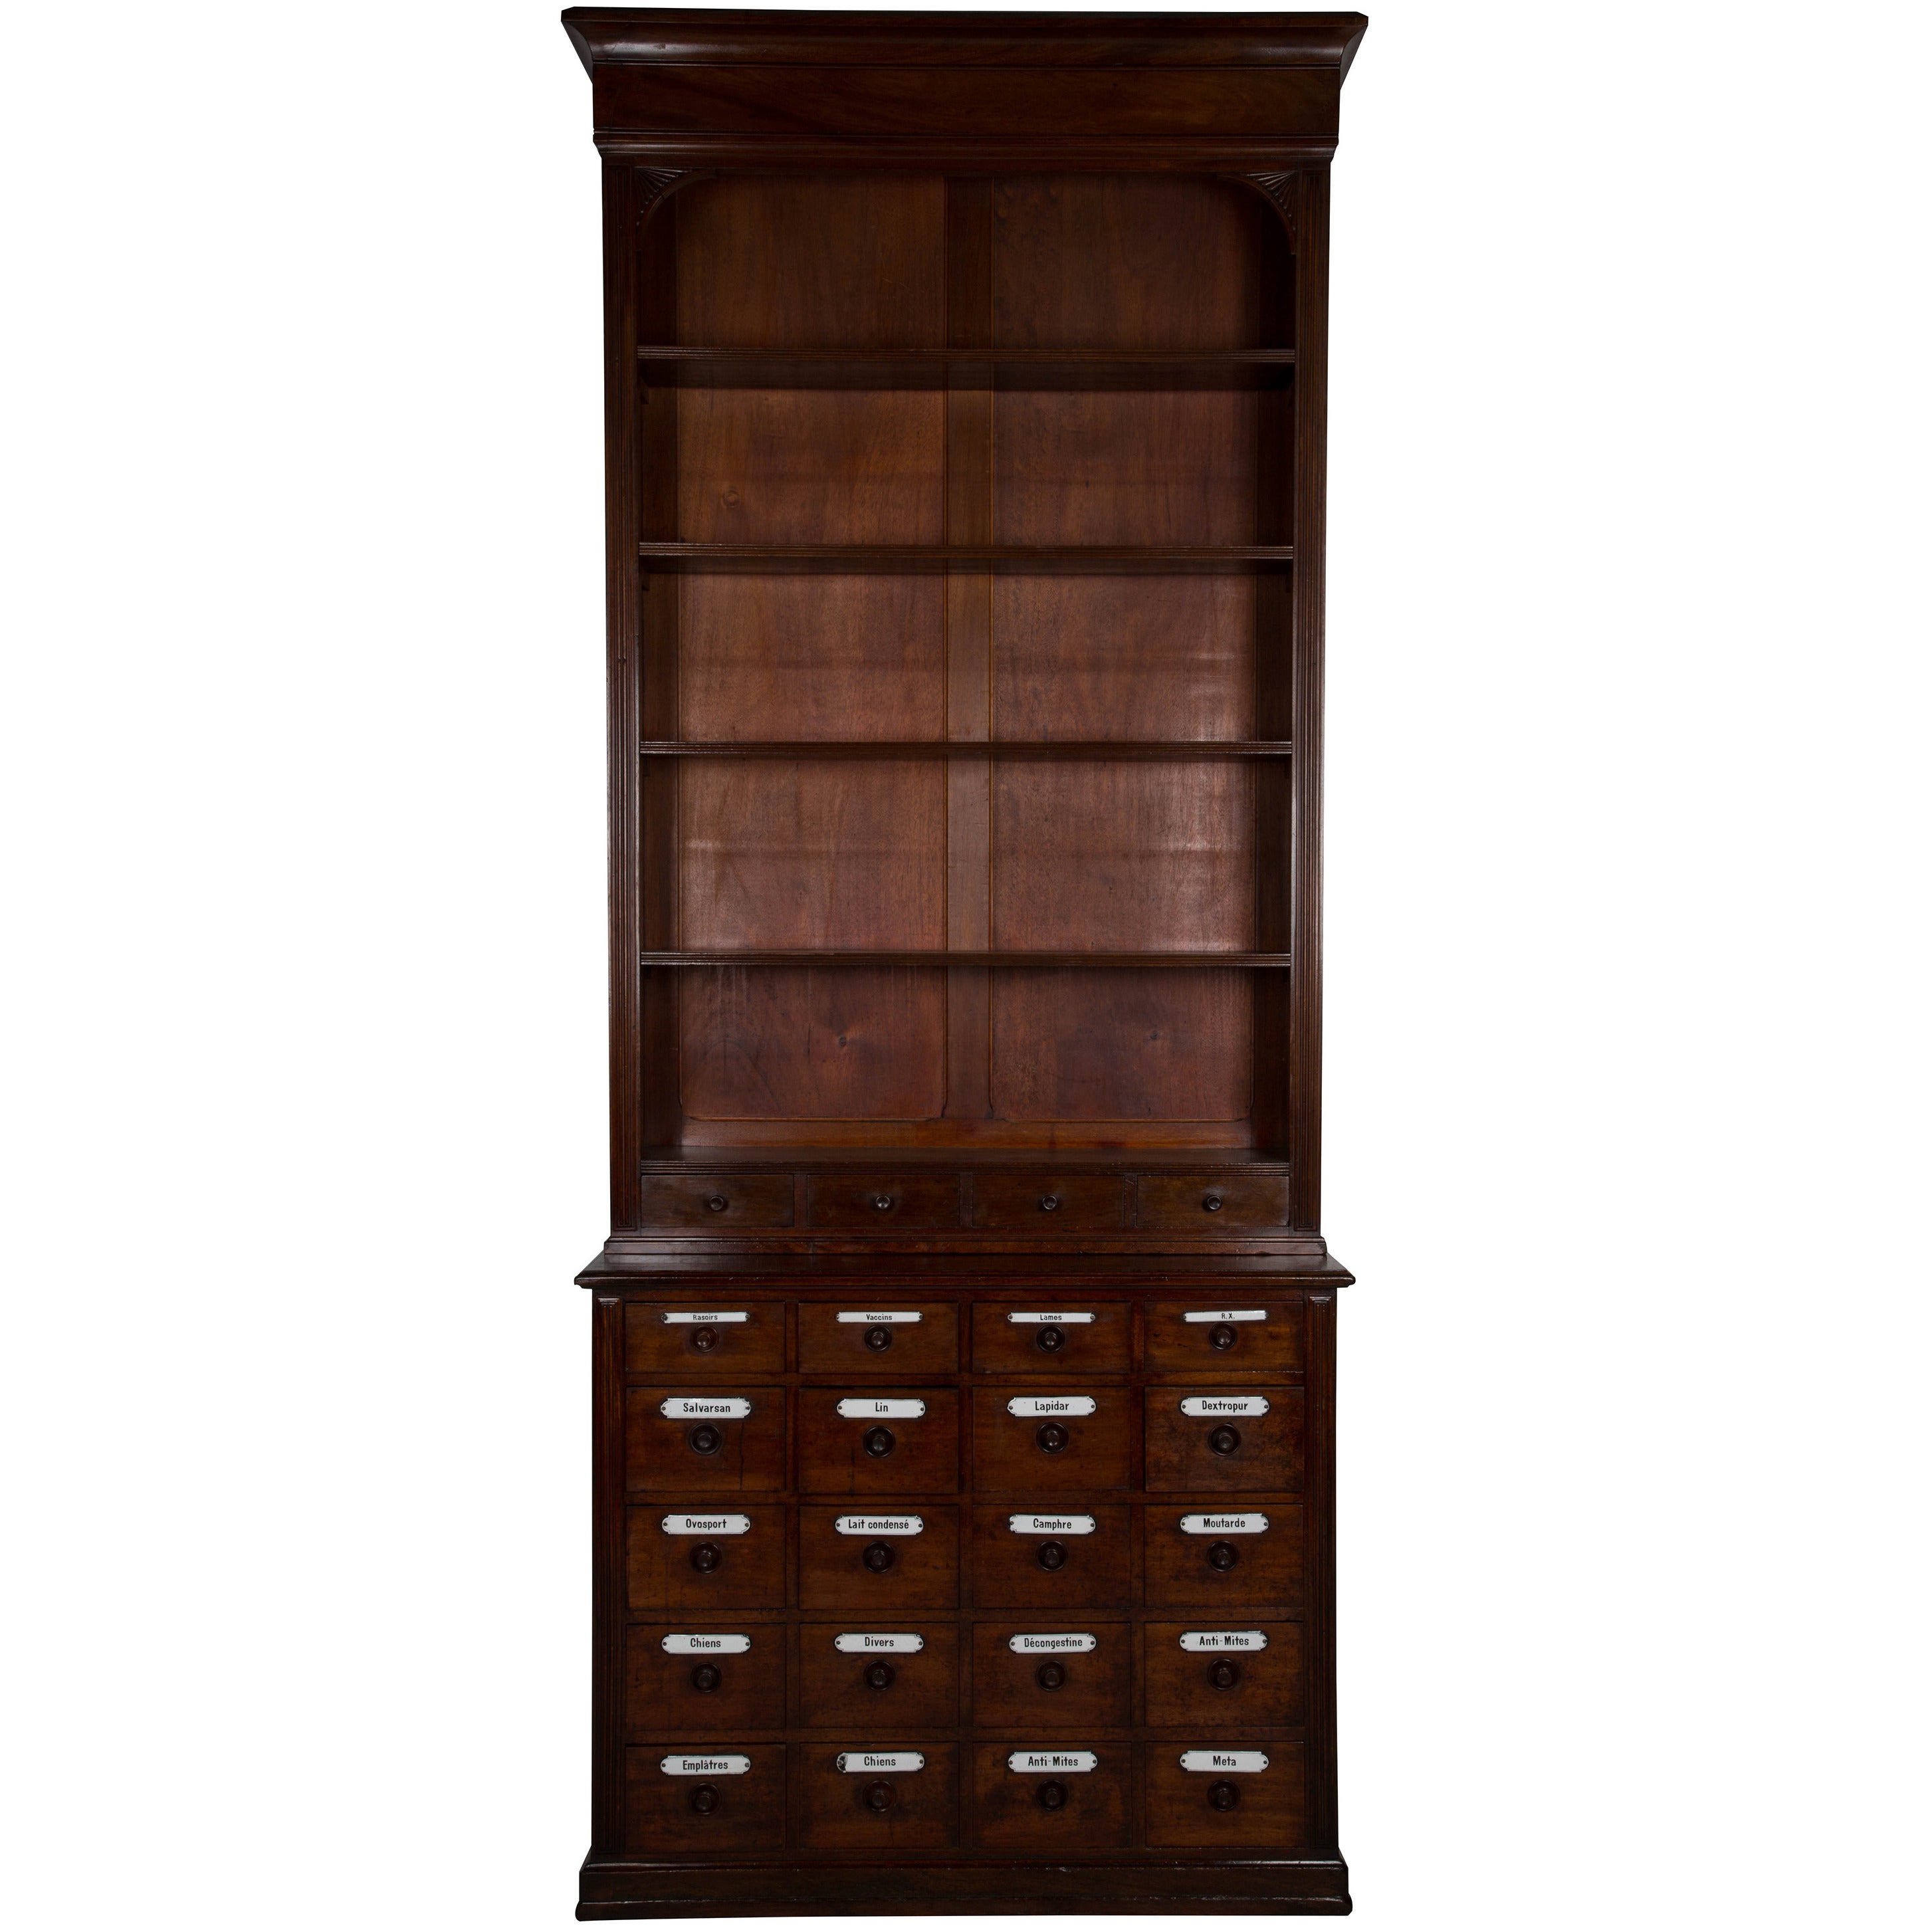 A Mahogany Parmacy Cabinet